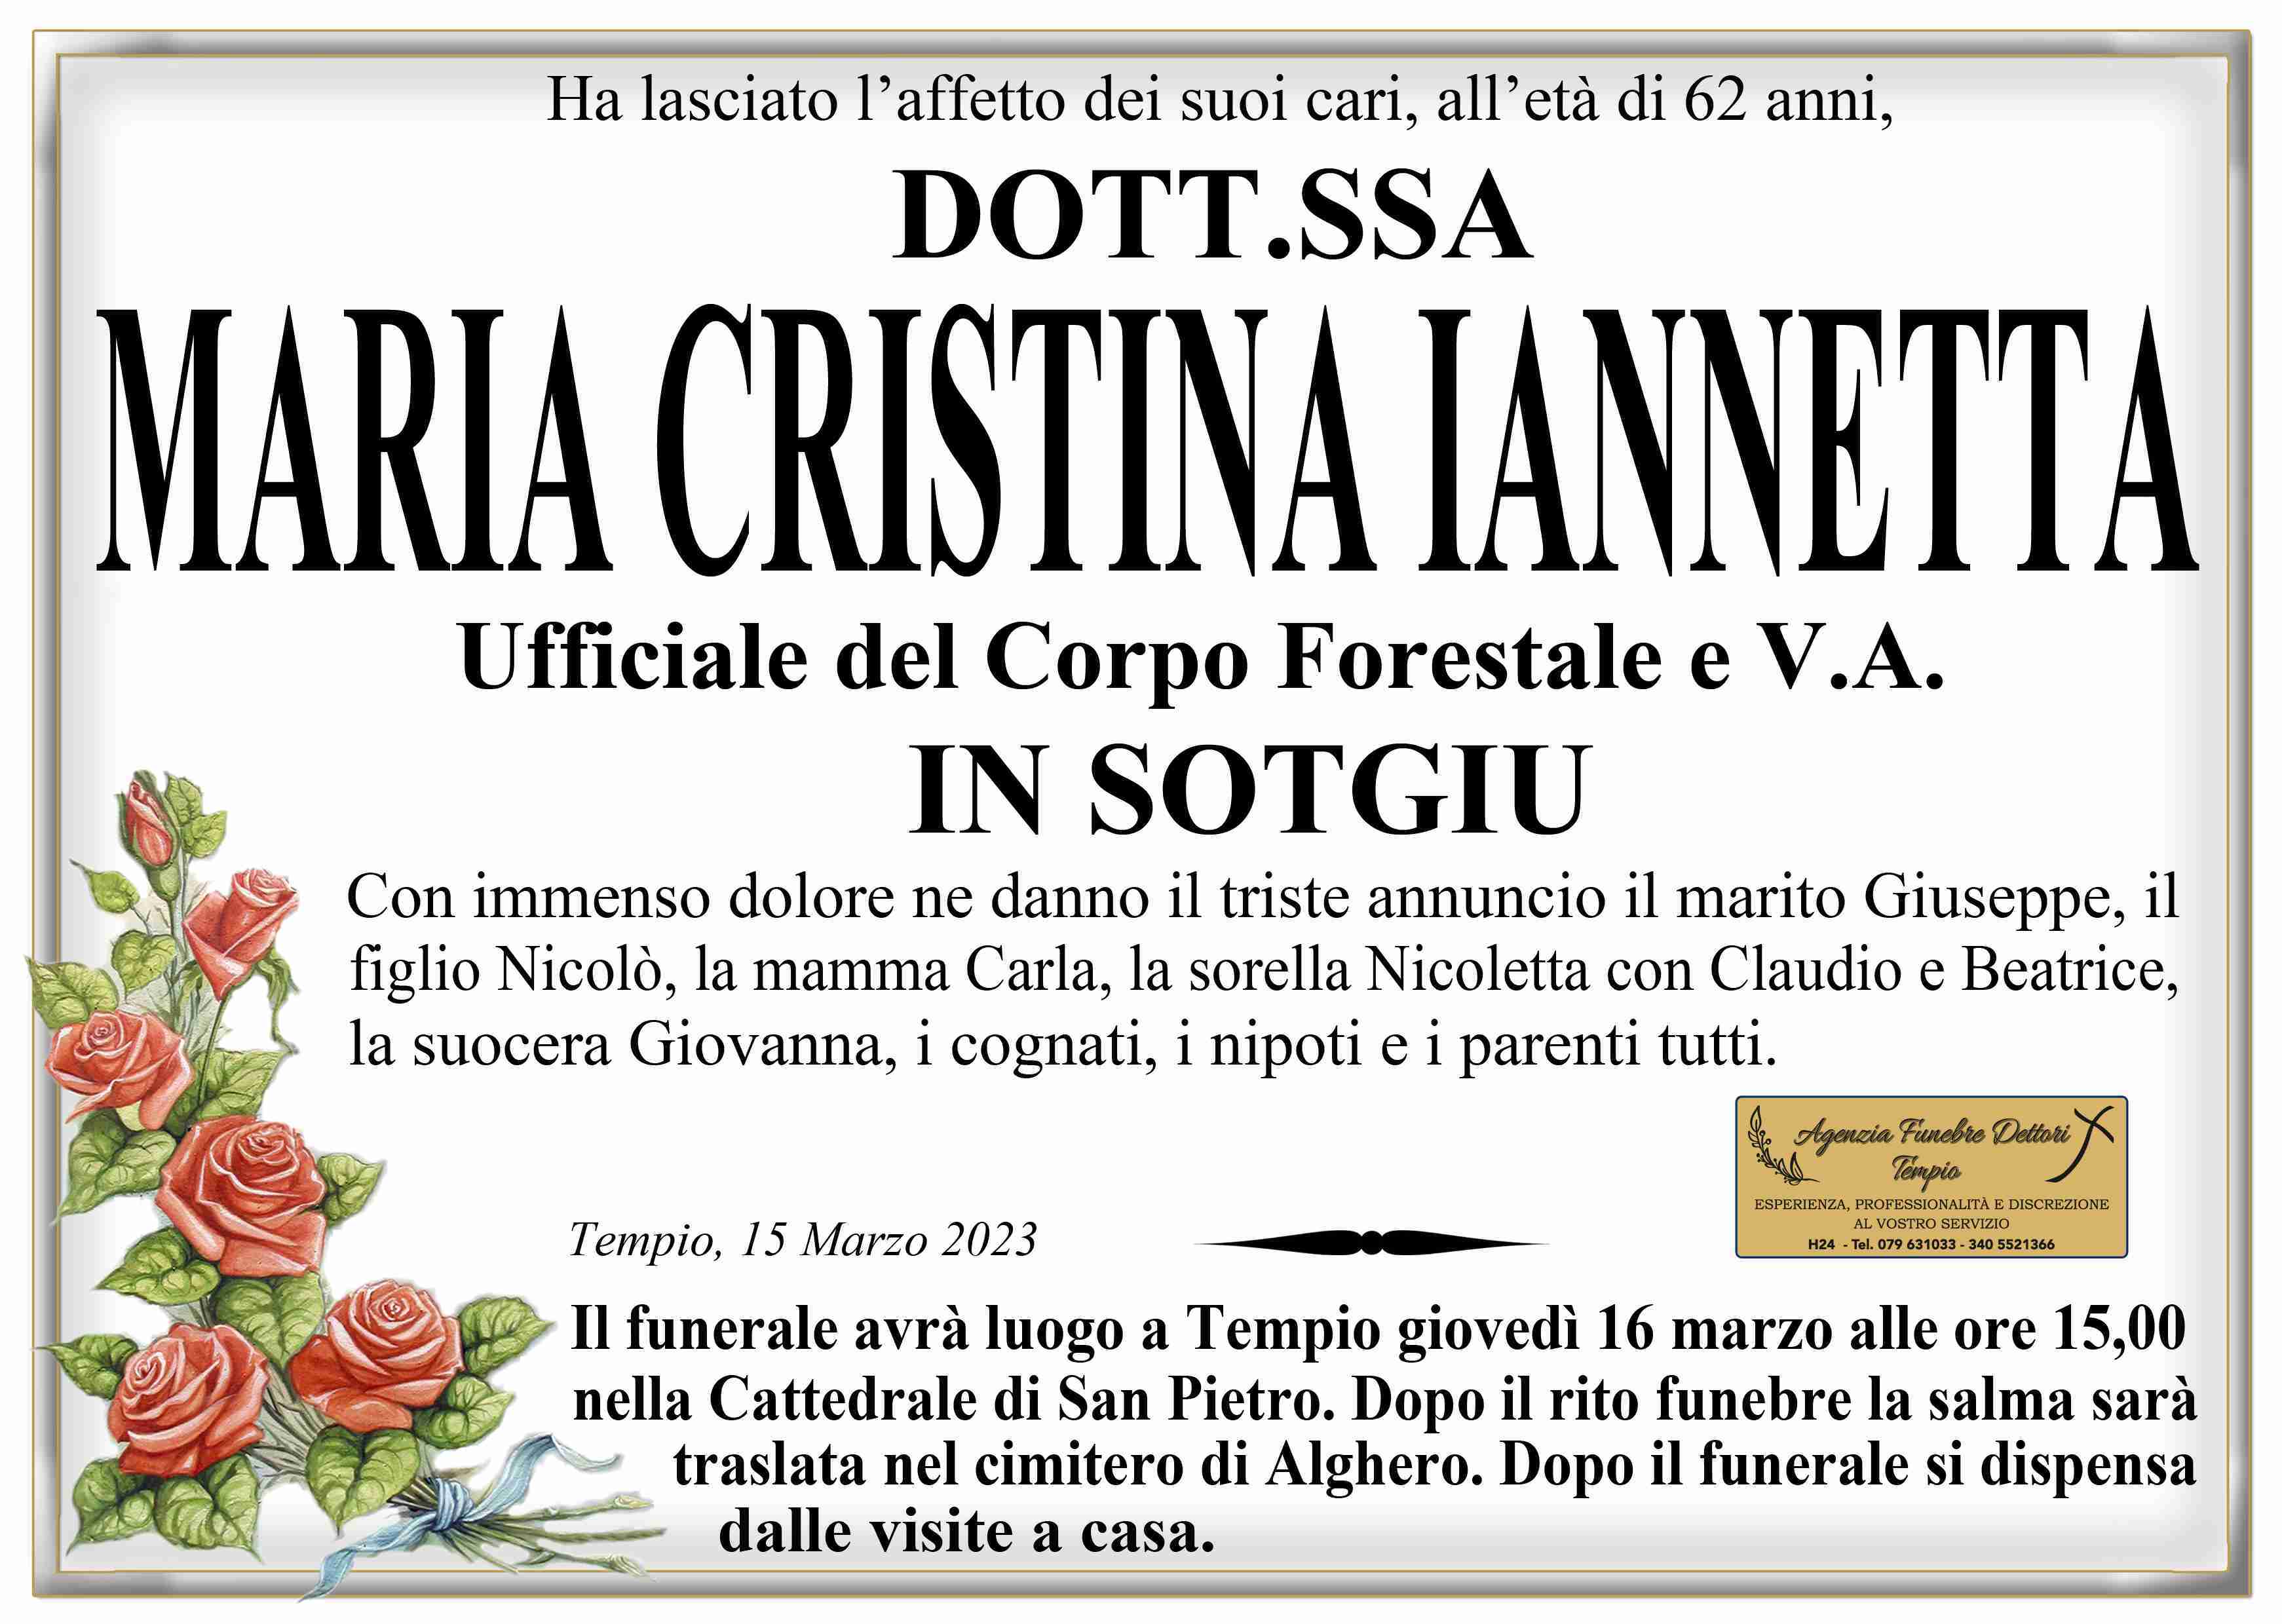 Maria Cristina Iannetta